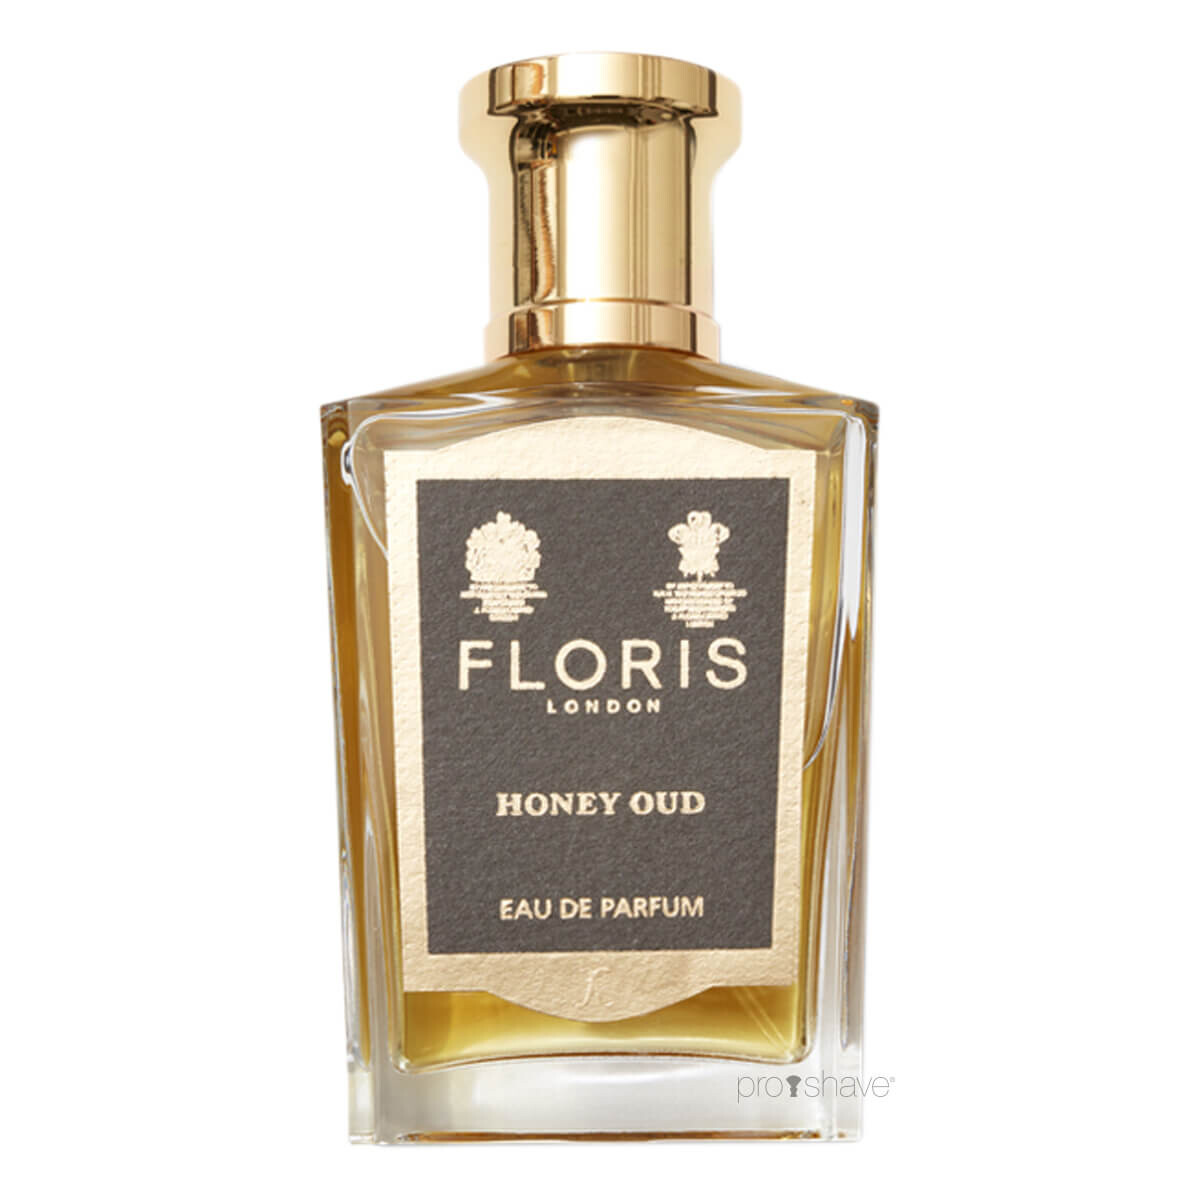 Se Floris Honey Oud, Eau de Parfum, 50 ml. hos Proshave